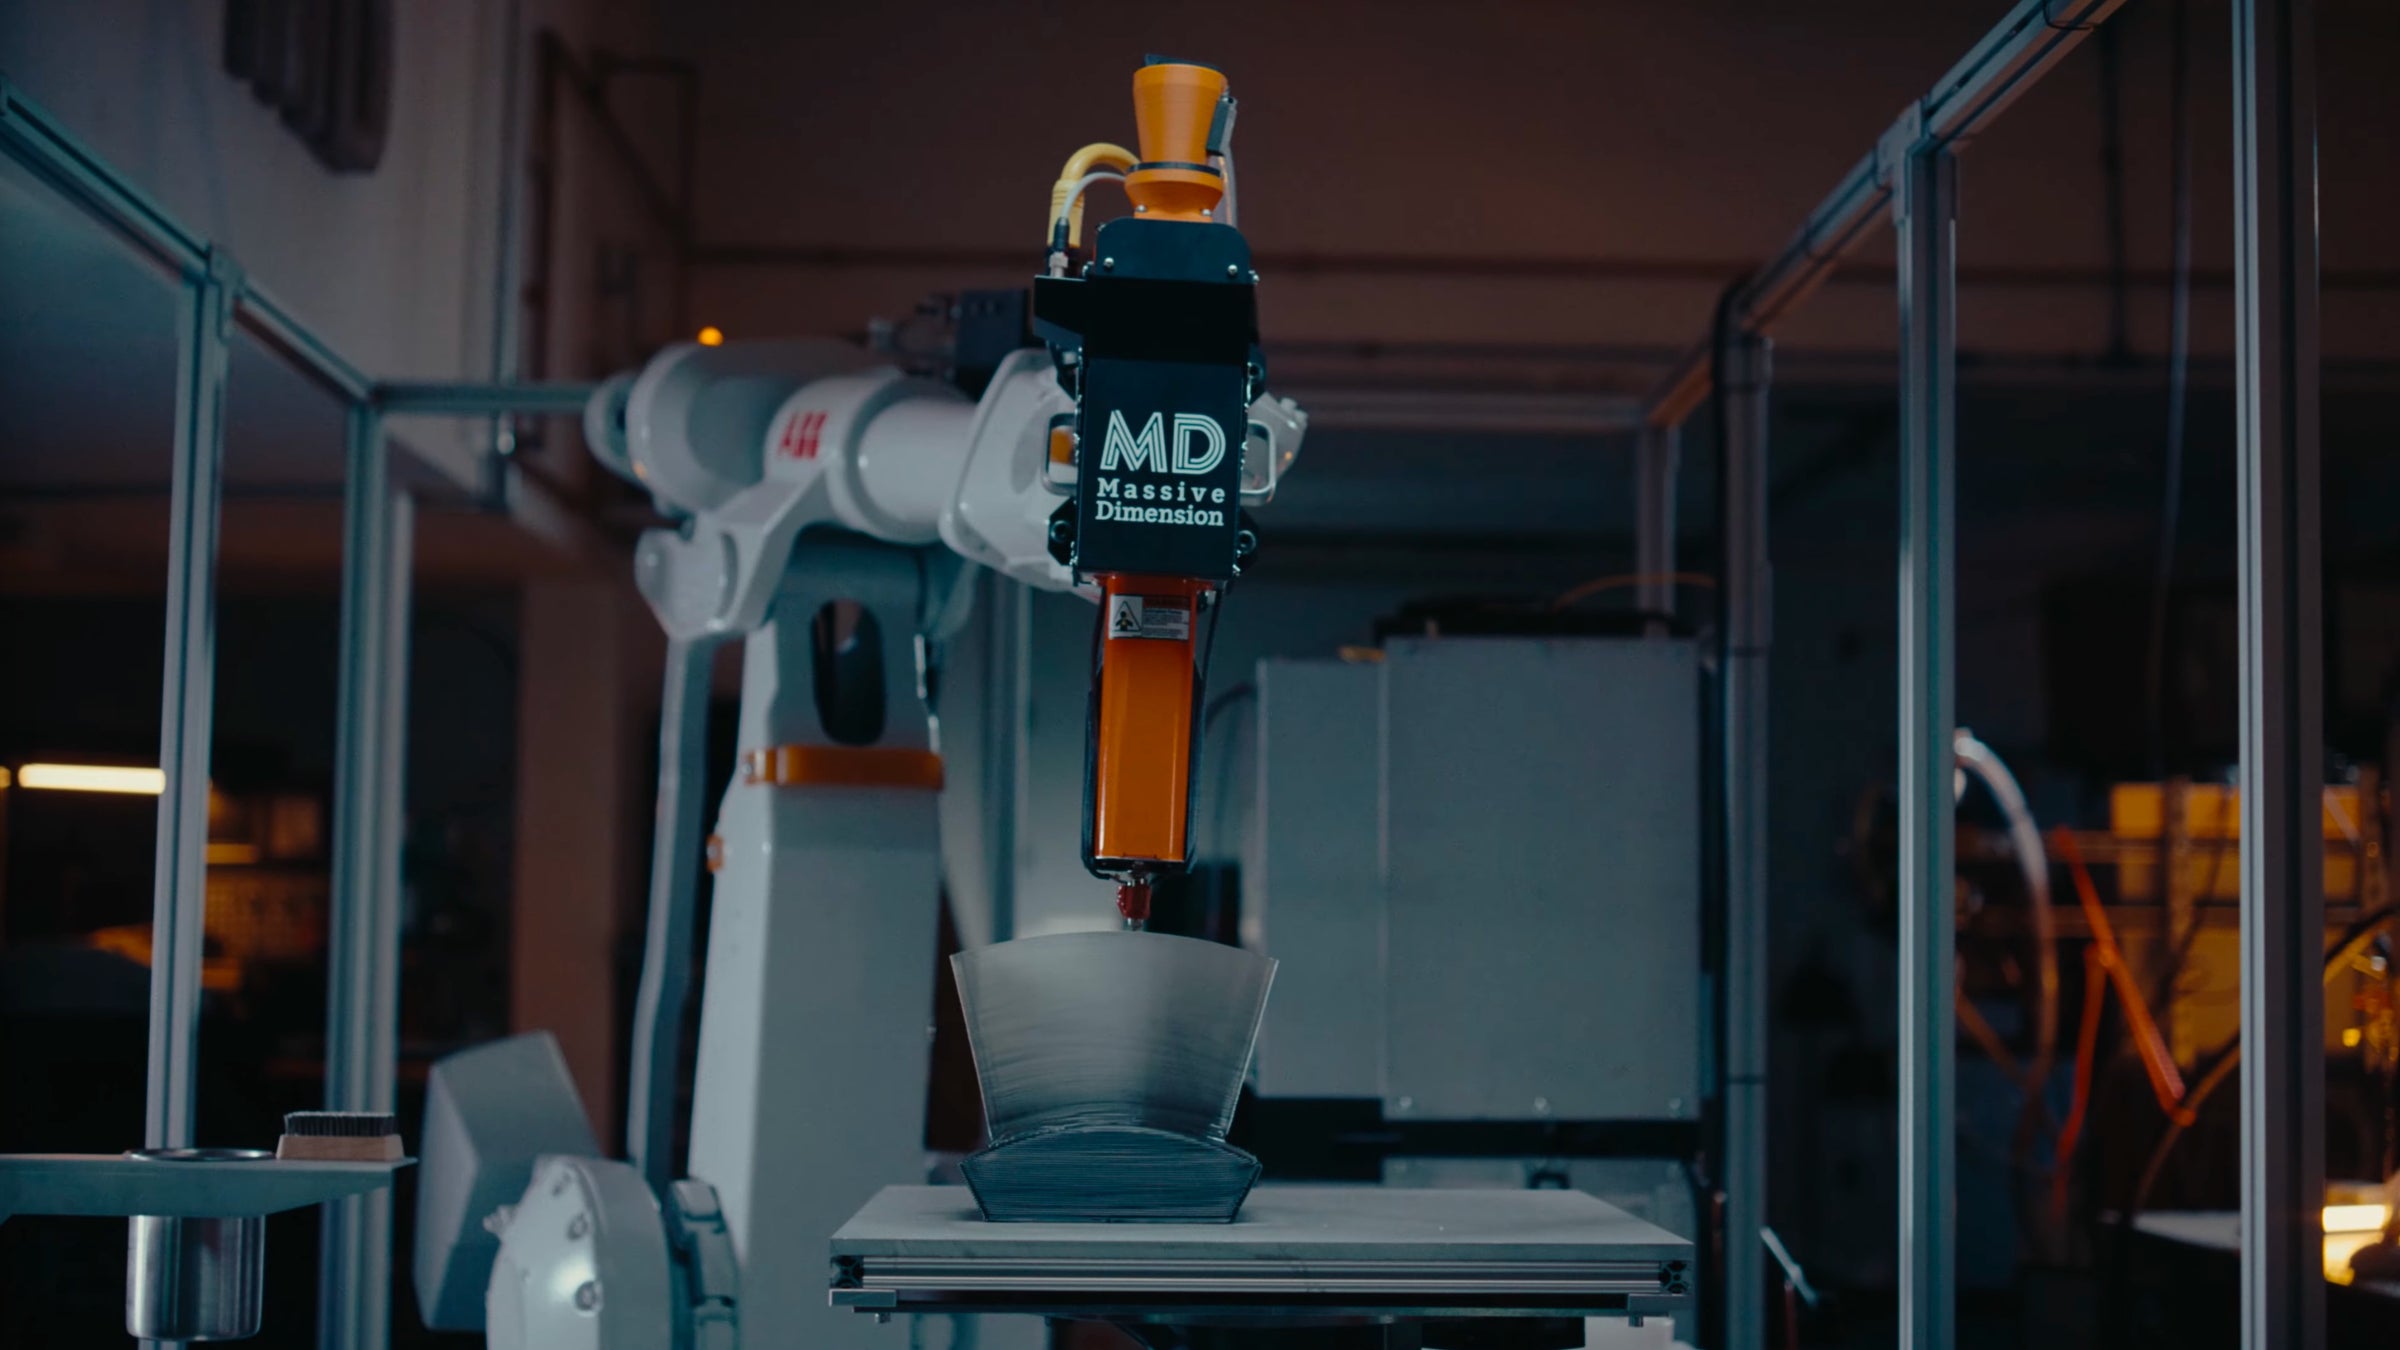 Robotic 3D Printing Cells – Massive Dimension